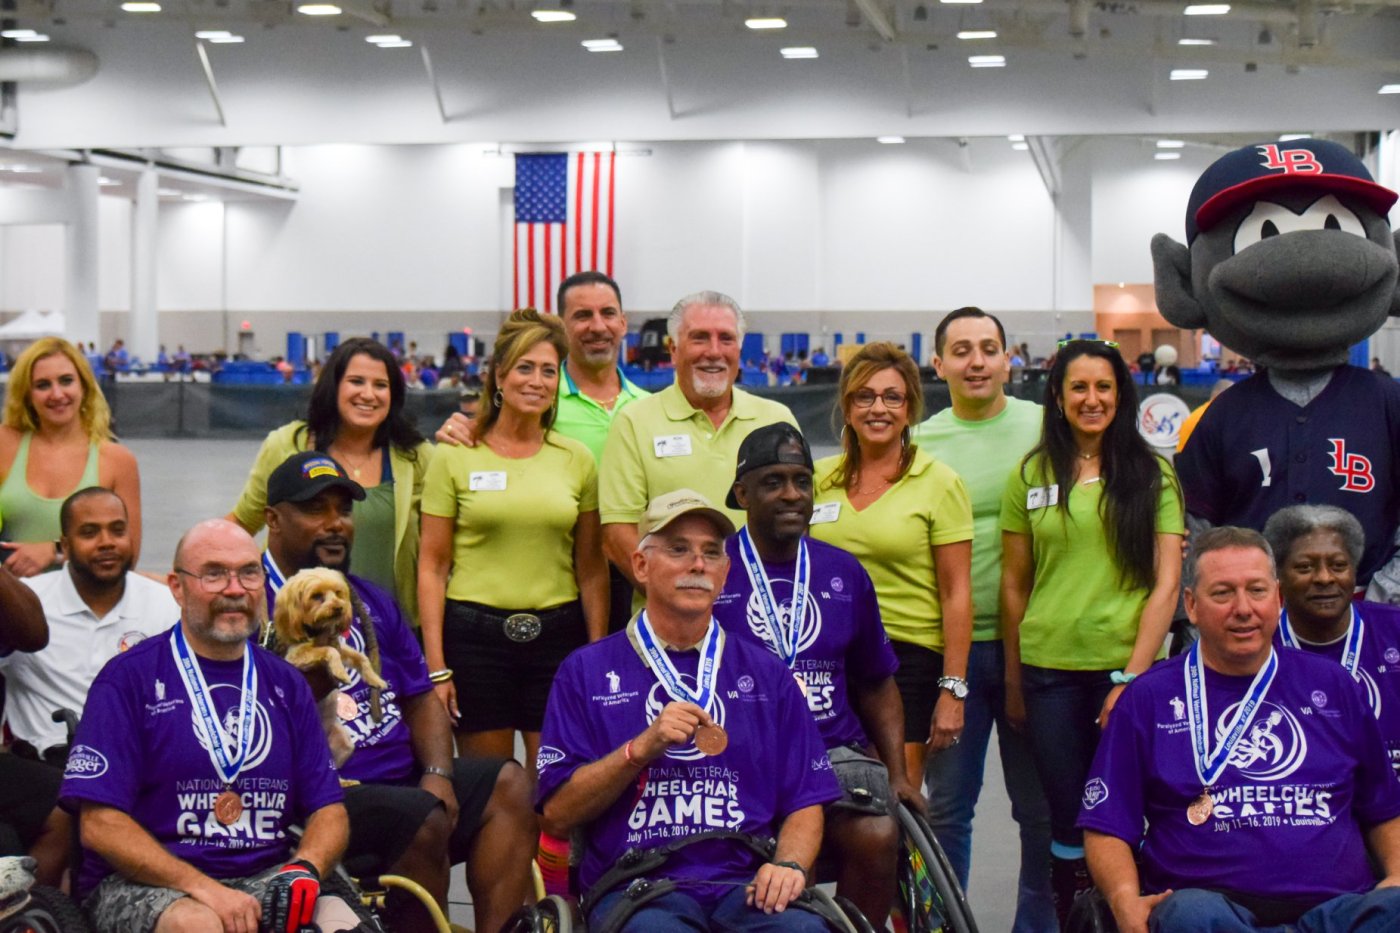 Wheelchair Softball is a family affair for DeGasperis Foundation